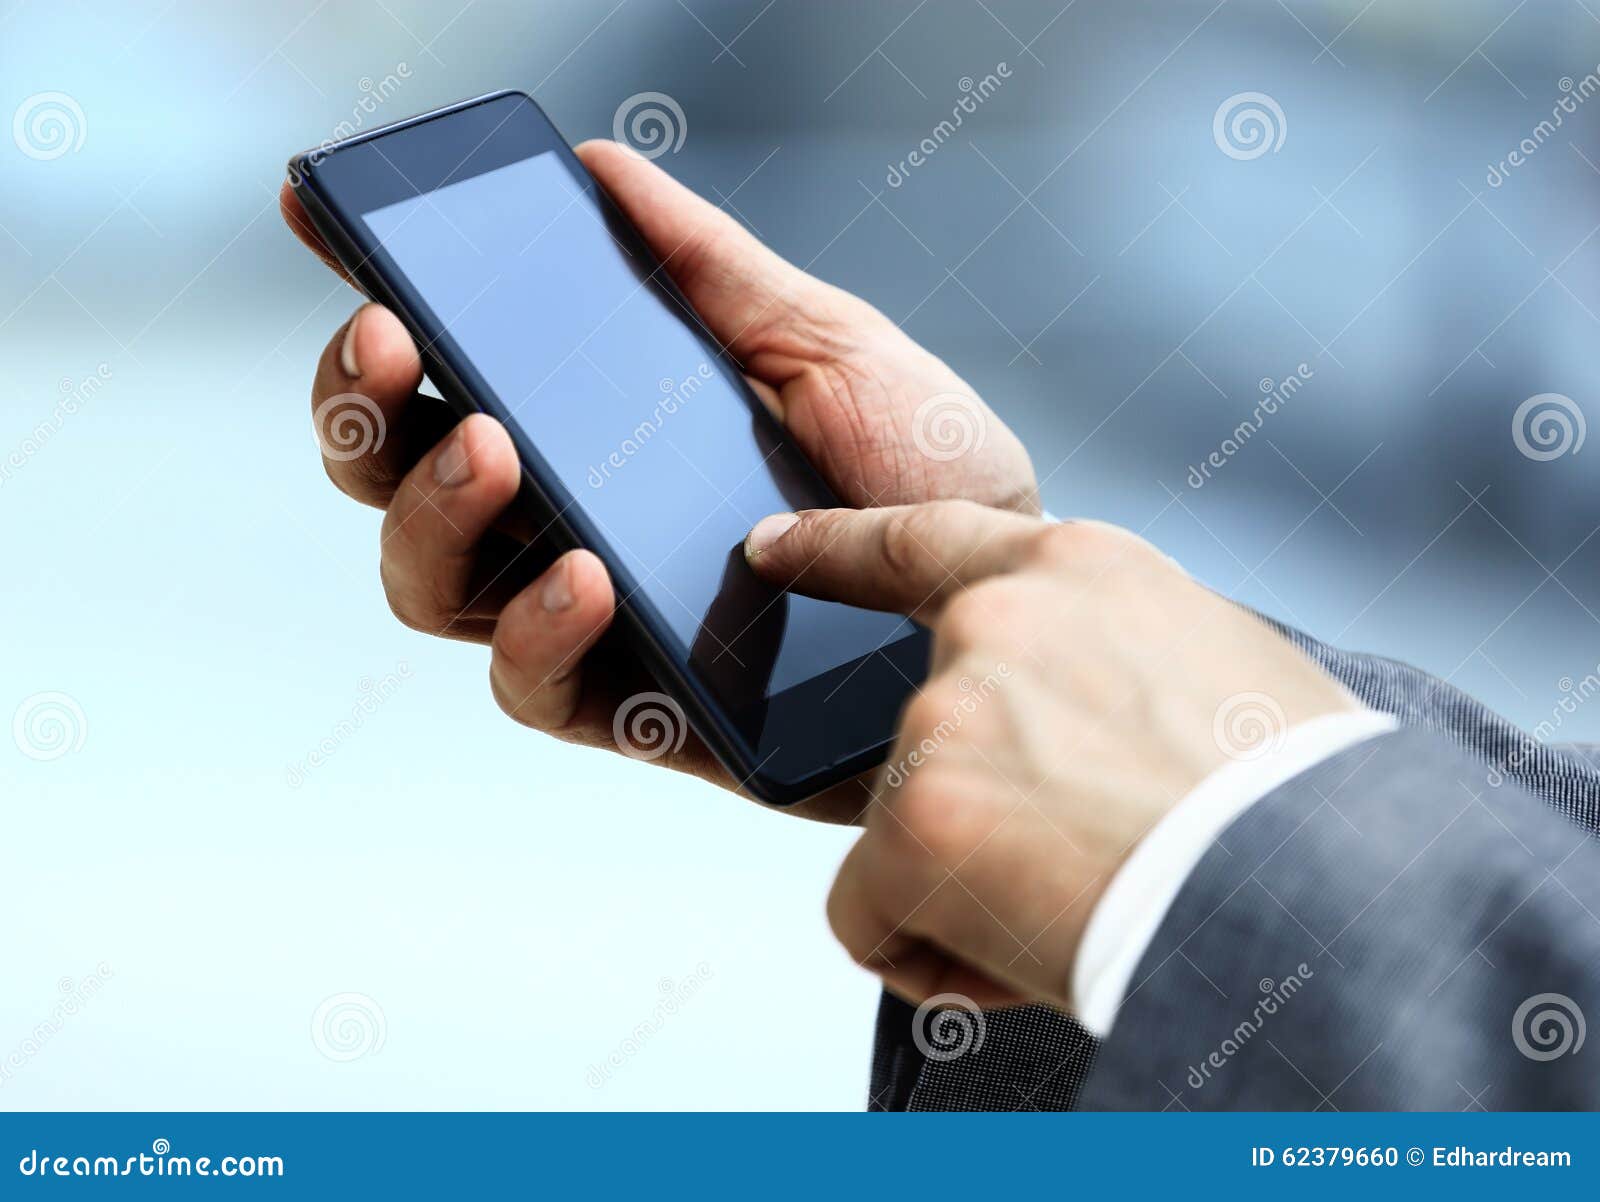 Holding Phone Stock Photo - Image: 62379660